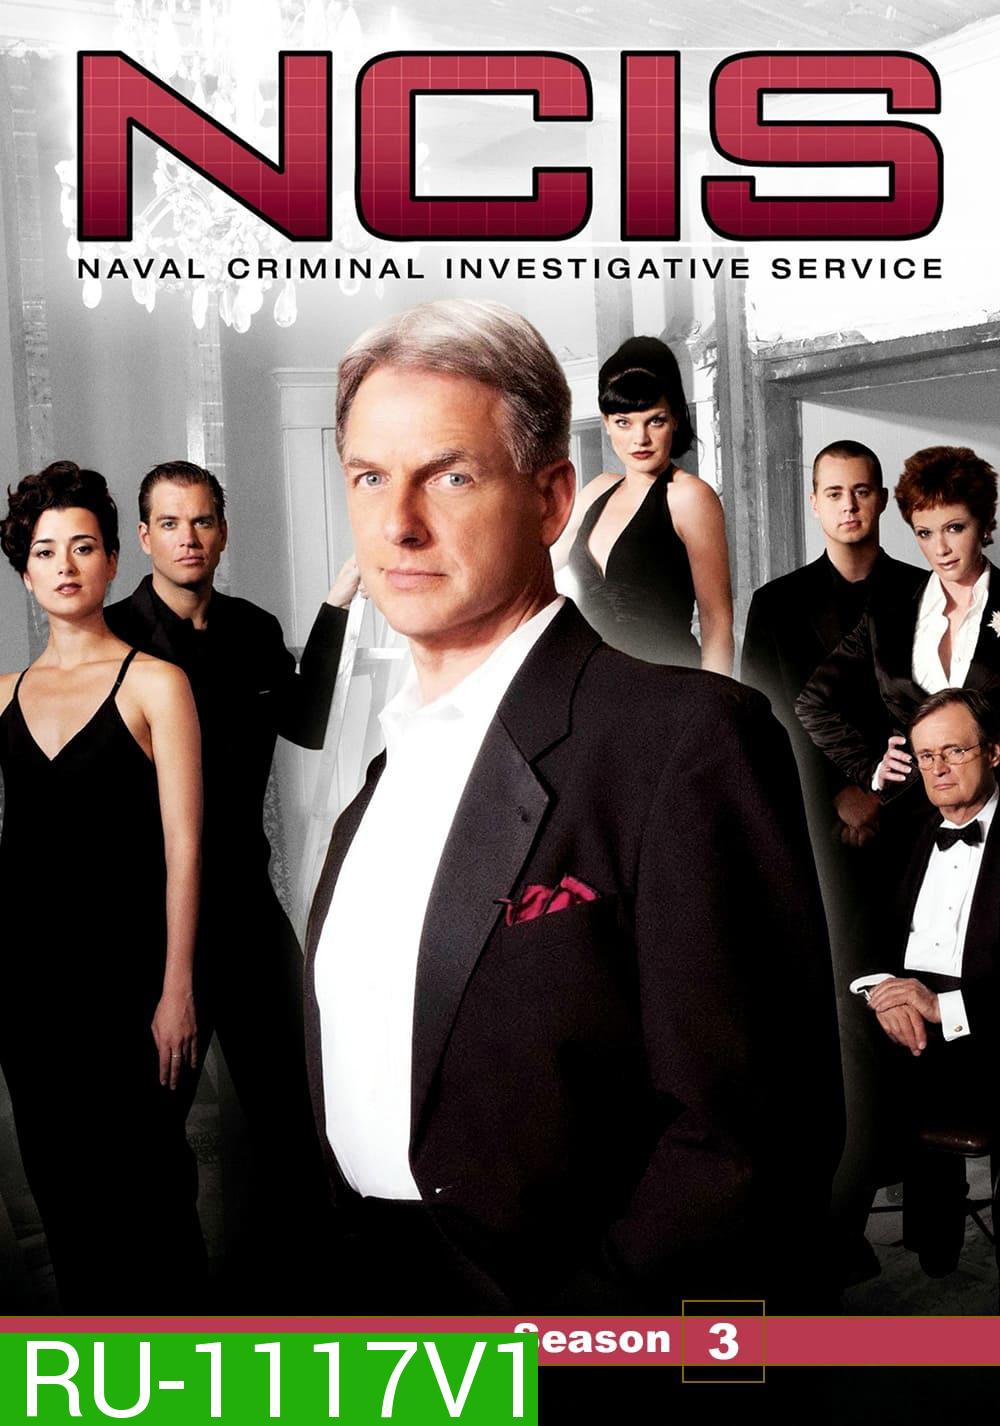 เอ็นซีไอเอส หน่วยสืบสวนแห่งนาวิกโยธิน ปี 3 NCIS: Naval Criminal Investigative Service Season 3 (2005) 24 ตอน  